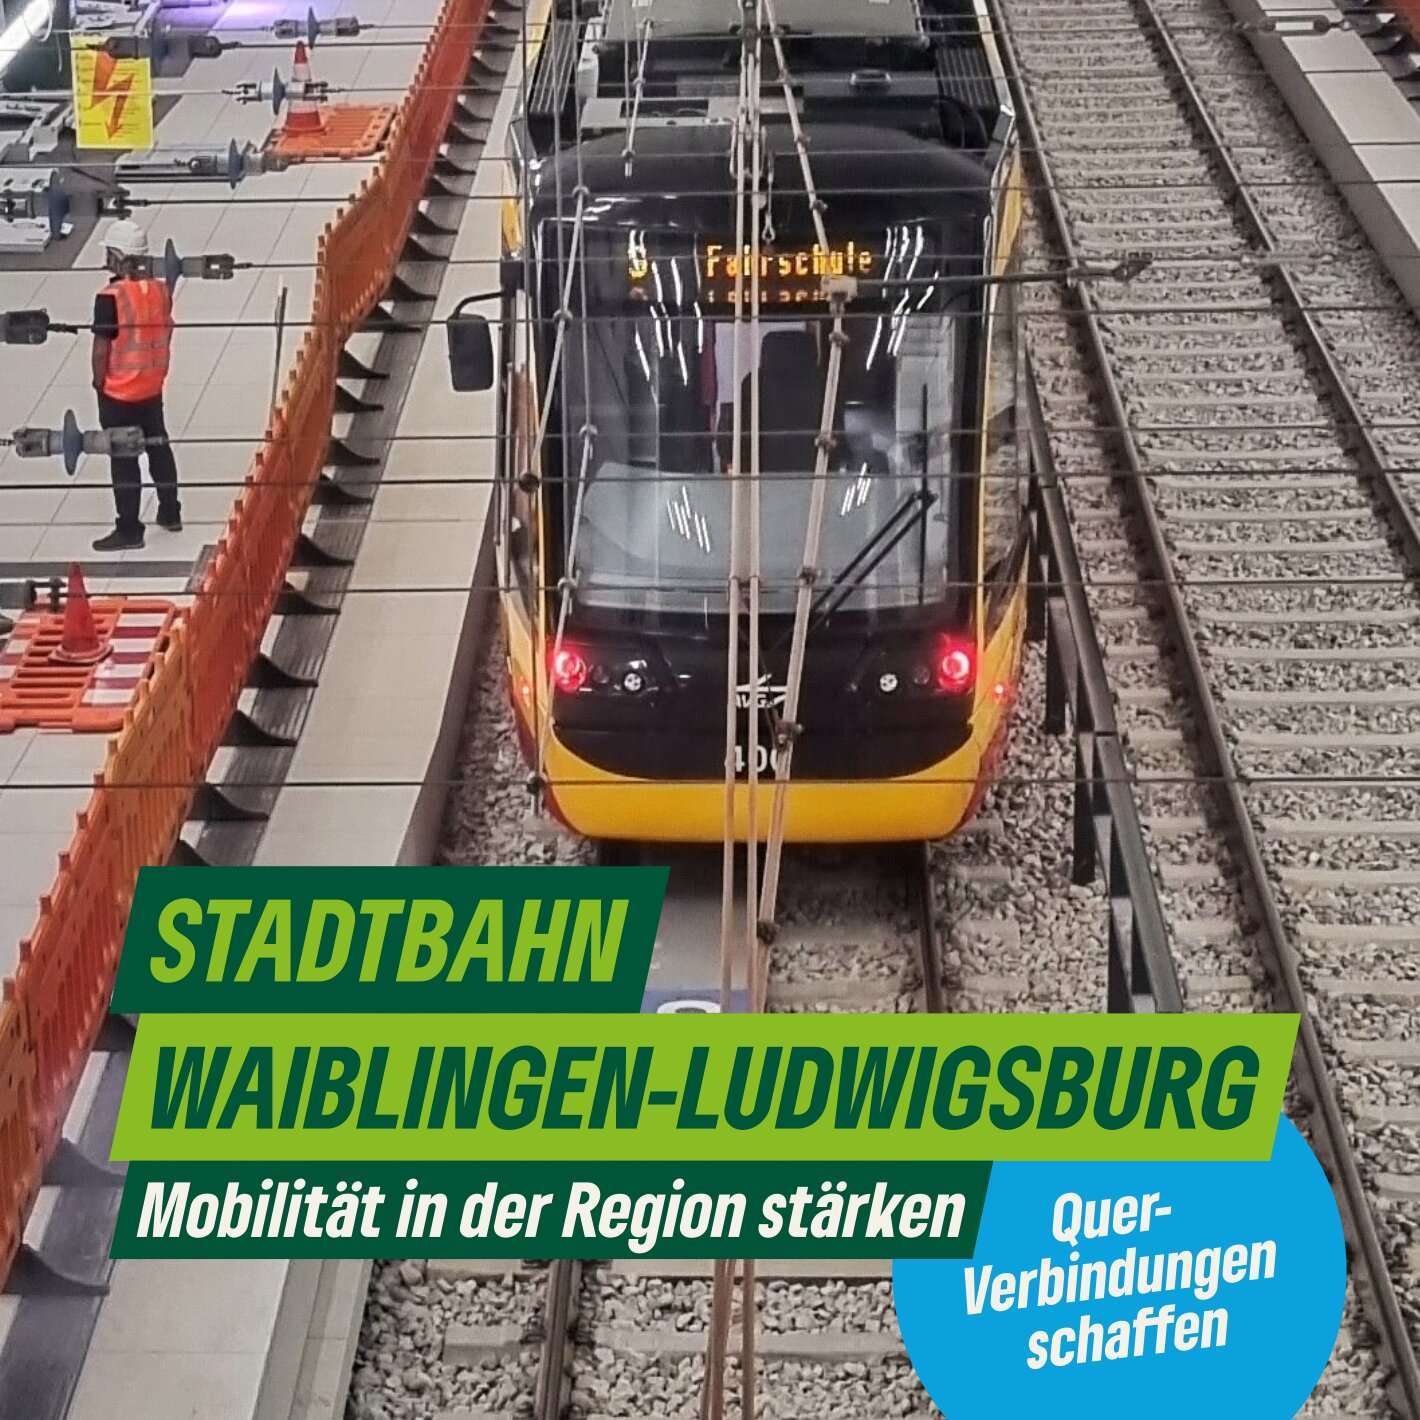 Planungen für die Stadtbahn Waiblingen-Ludwigsburg: Eine große Chance für die Region